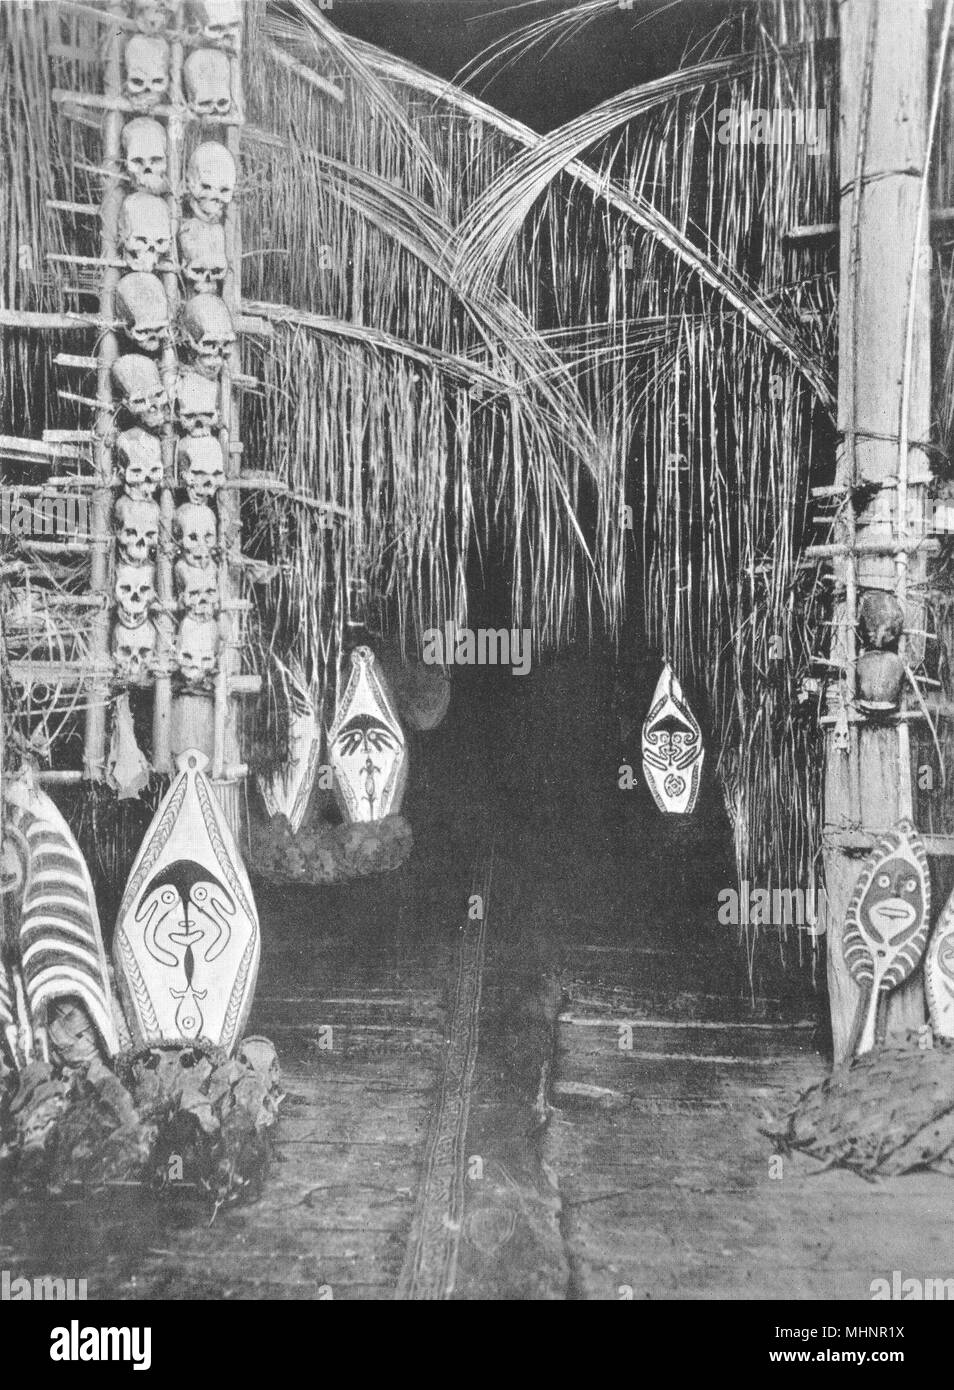 MELANESIA. Melanesia. Interior of Dubu, Toripi;  1900 old antique print Stock Photo